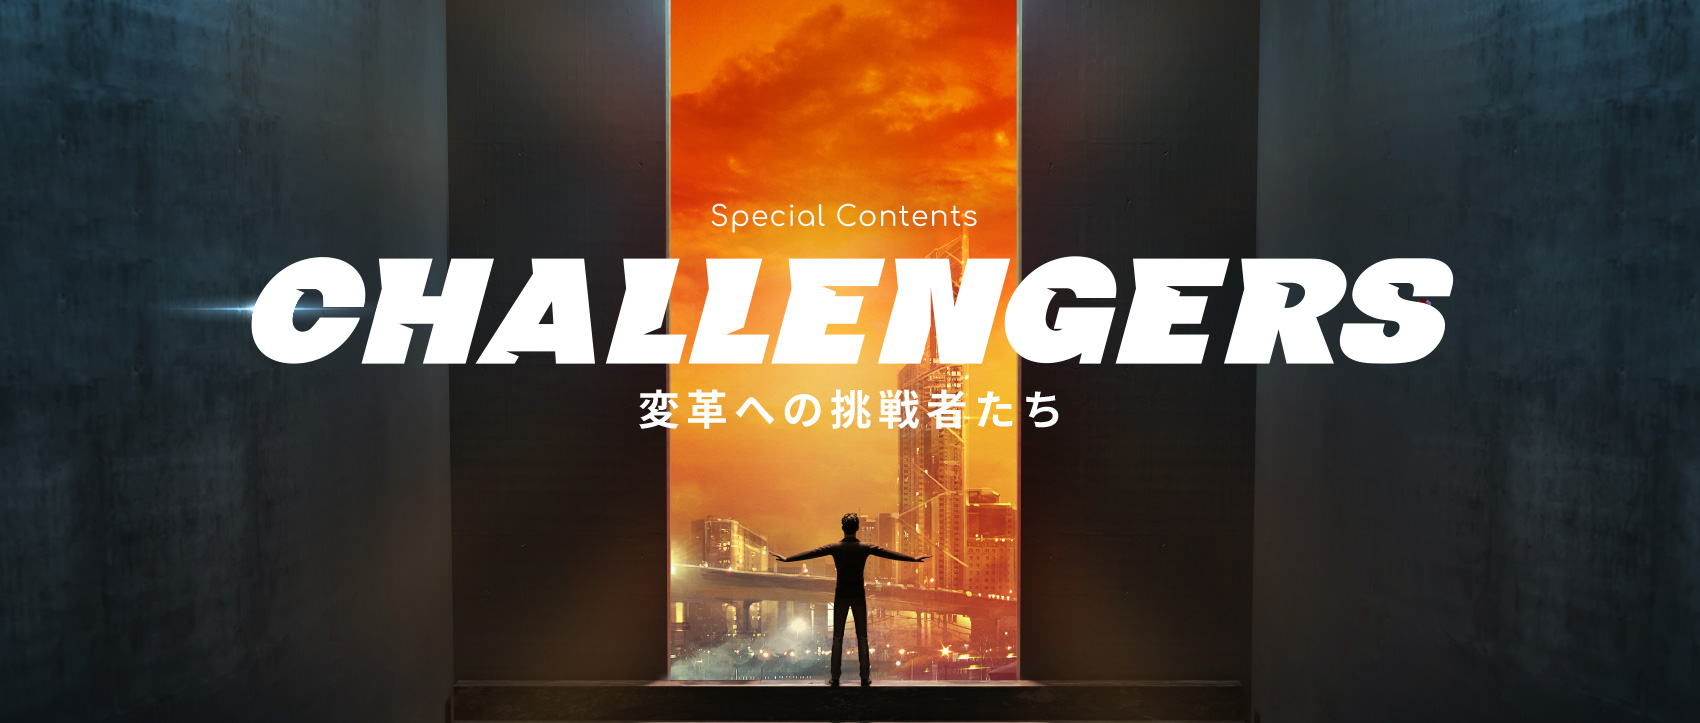 CHALLENGERS 〜変革への挑戦者たち〜